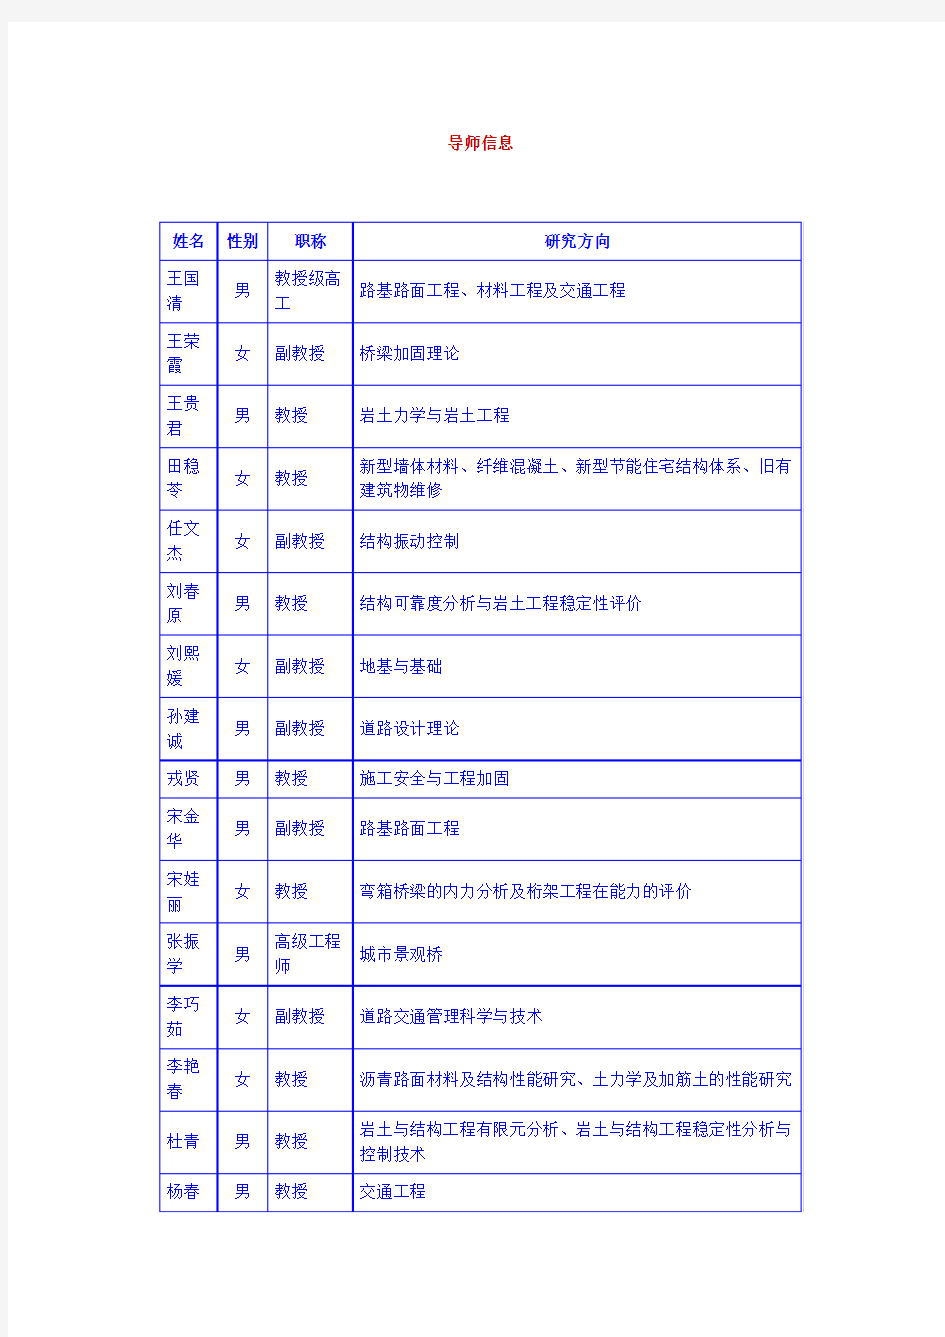 河北工业大学土木工程学院硕士研究生指导教师名单